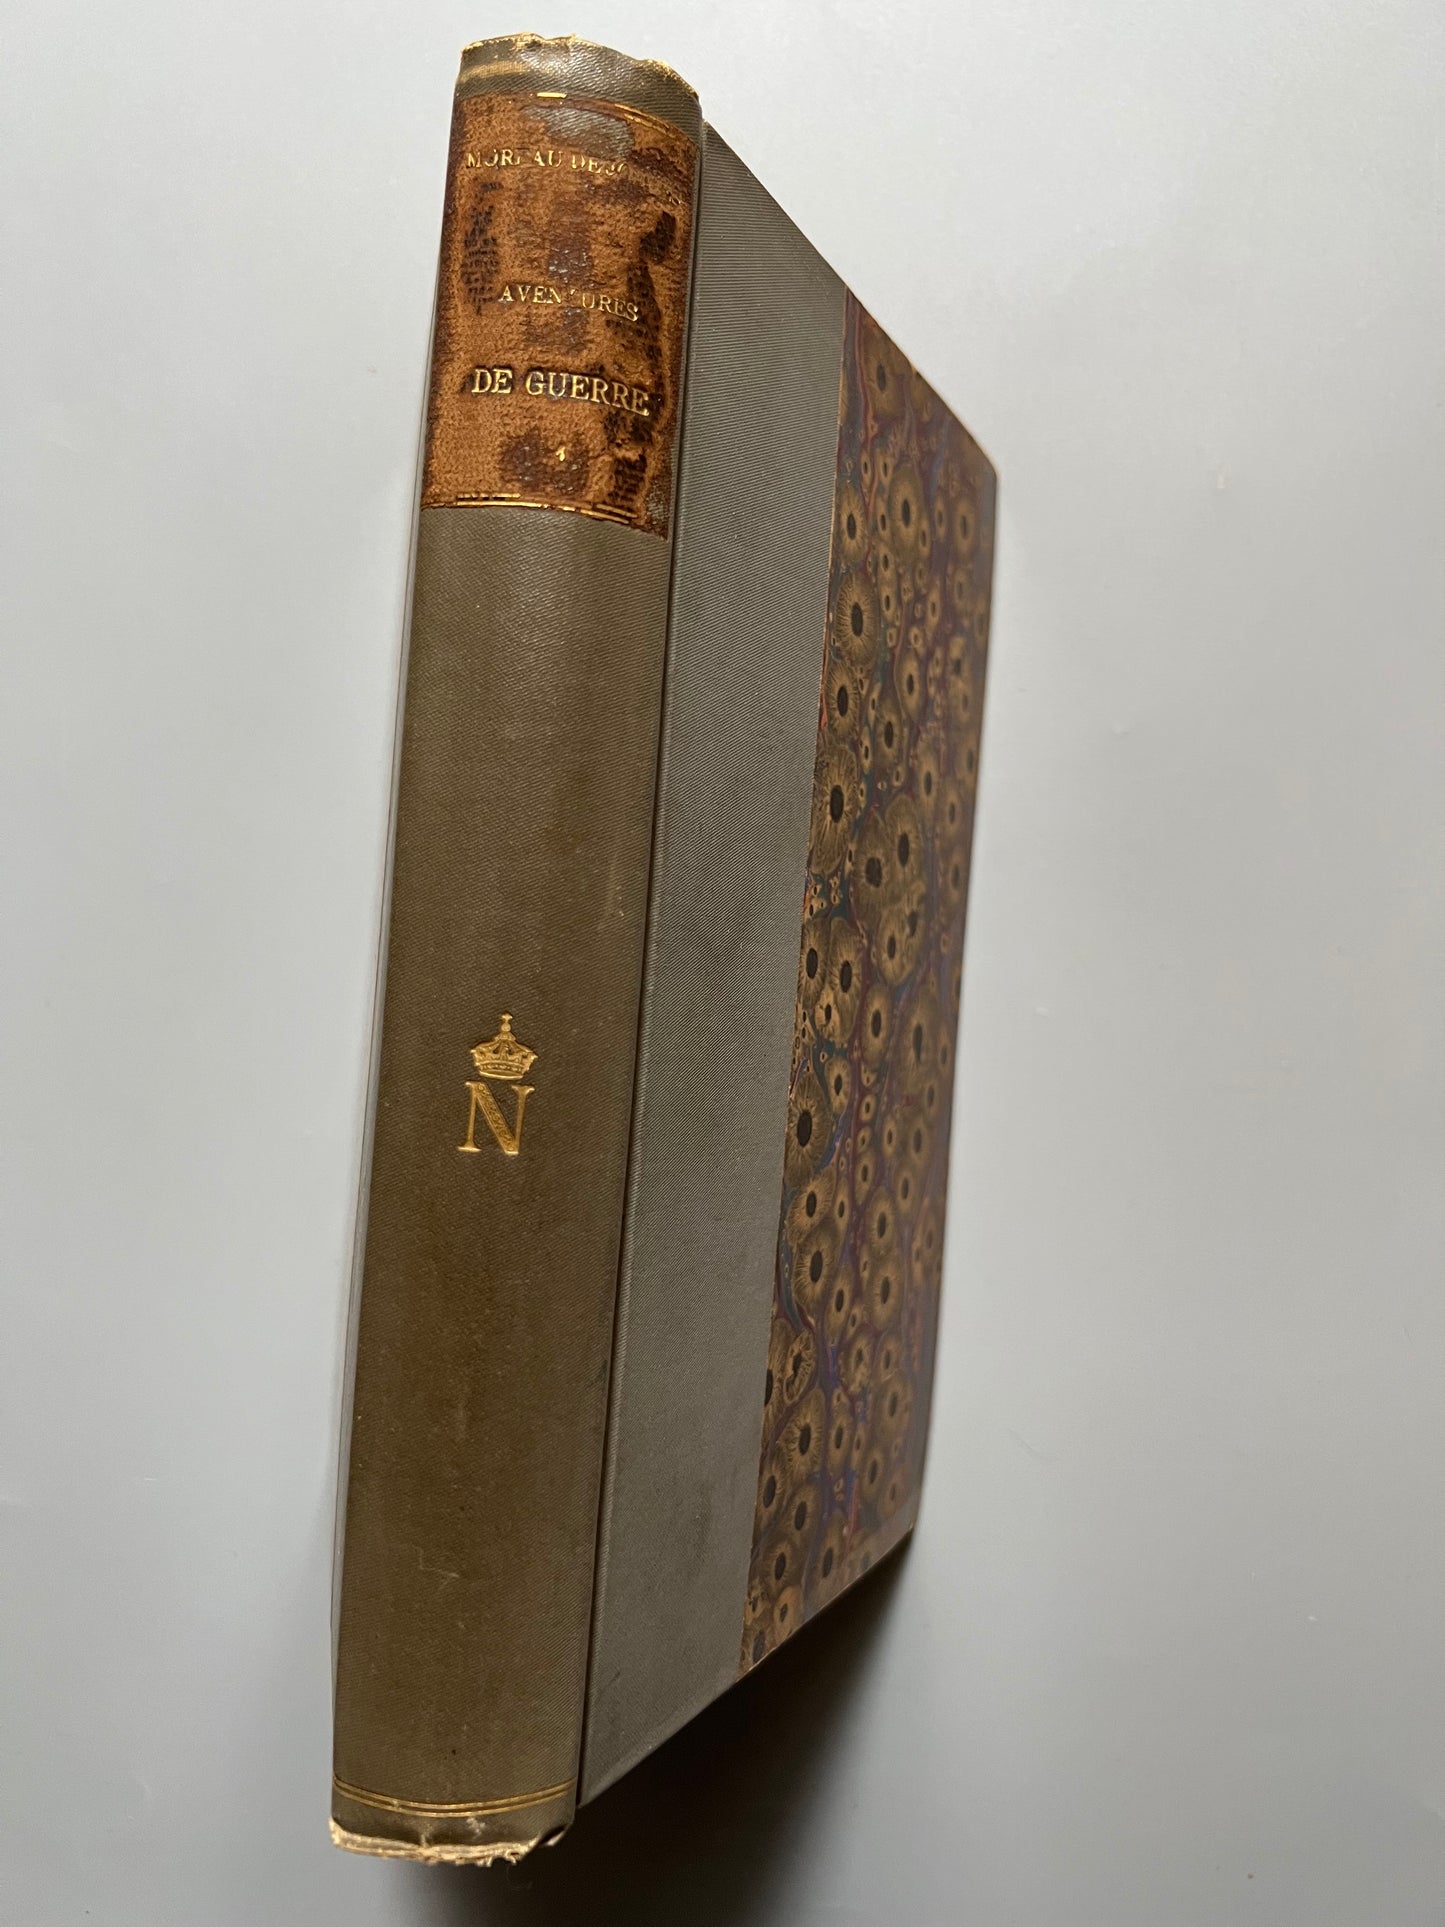 Aventures de guerre au temps de la république et du consulat, M. A. Moreau de Jonnès (tomo I) - Pagnerre libraire-èditeur, 1858